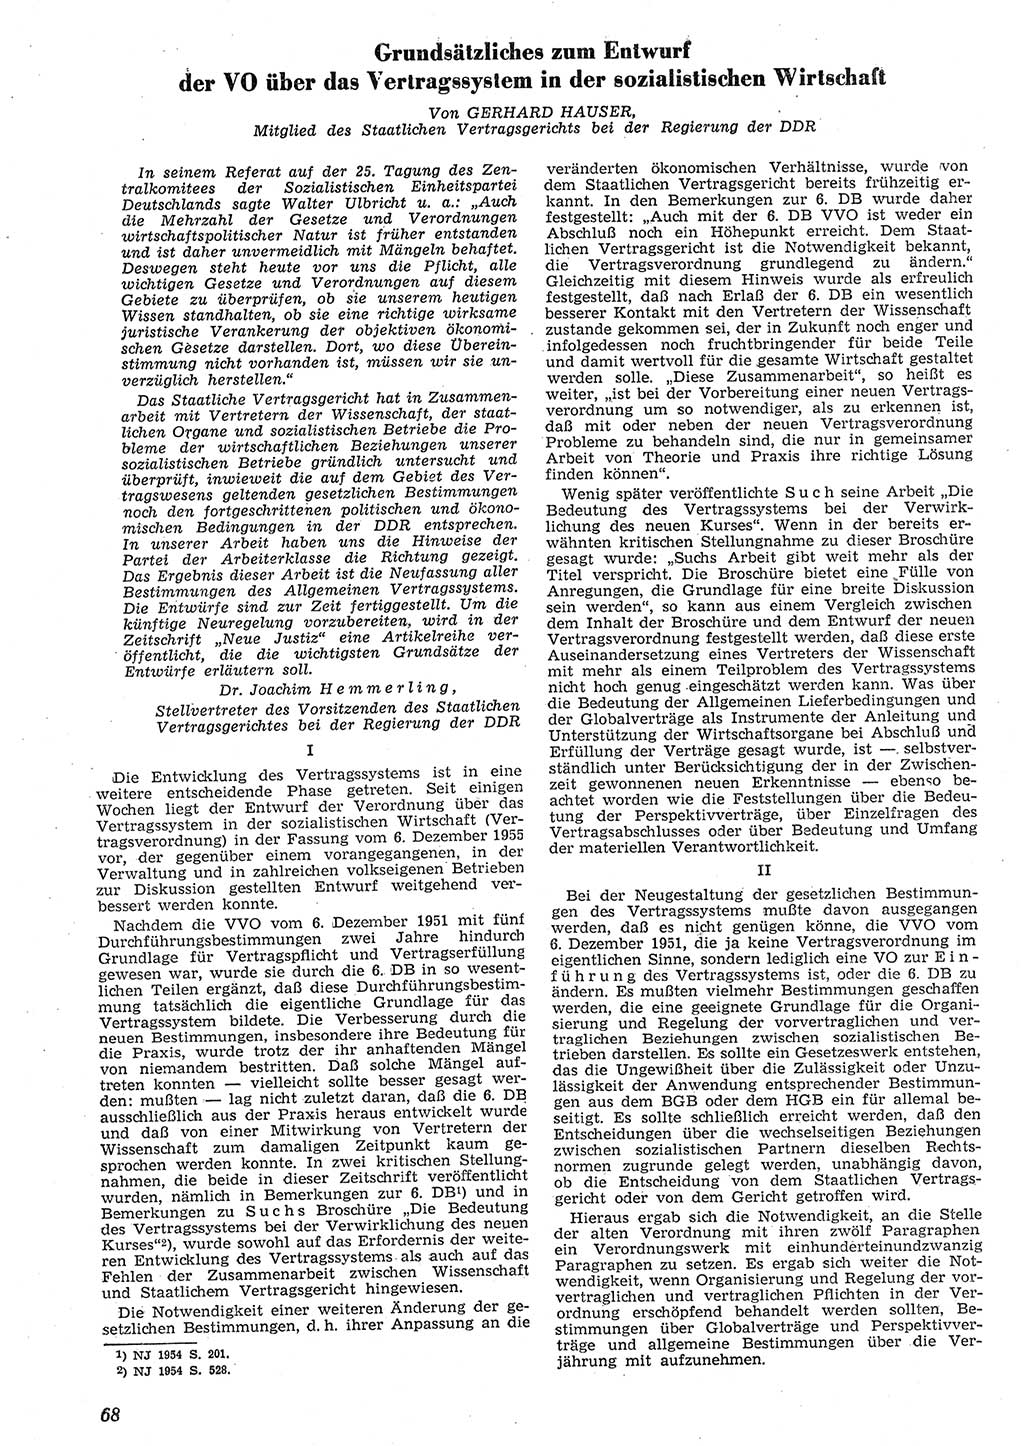 Neue Justiz (NJ), Zeitschrift für Recht und Rechtswissenschaft [Deutsche Demokratische Republik (DDR)], 10. Jahrgang 1956, Seite 68 (NJ DDR 1956, S. 68)